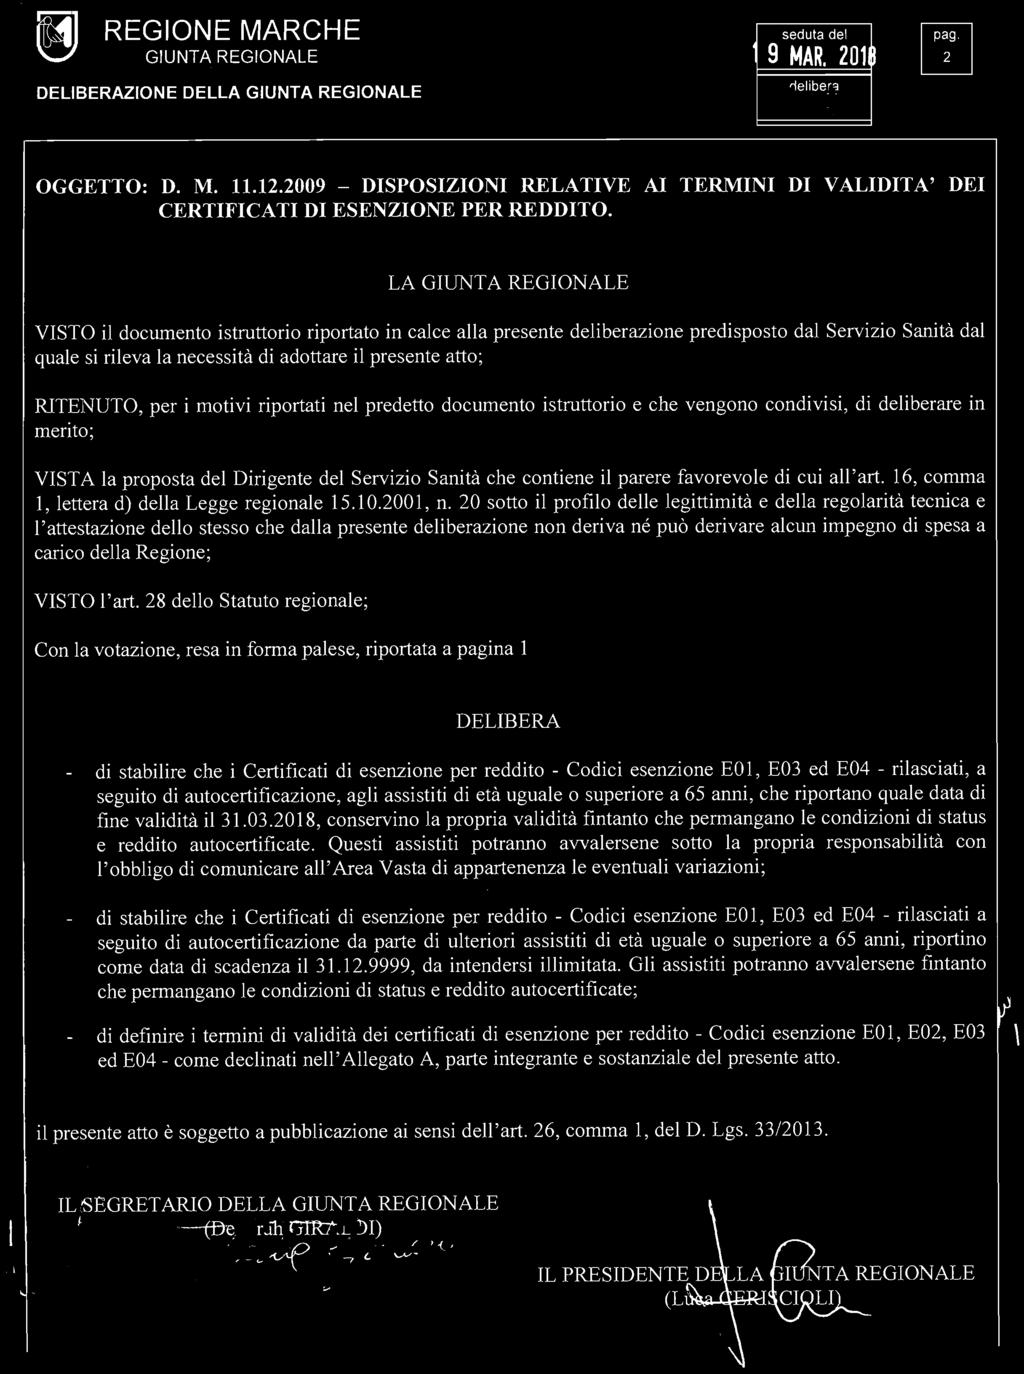 GIUNTA REGIONALE 9 MAR. 201 OGGETTO: D. M. 11.12.2009 - DISPOSIZIONI RELATIVE AI TERMINI DI VALIDITA' DEI CERTIFICATI DI ESENZIONE PER REDDITO.